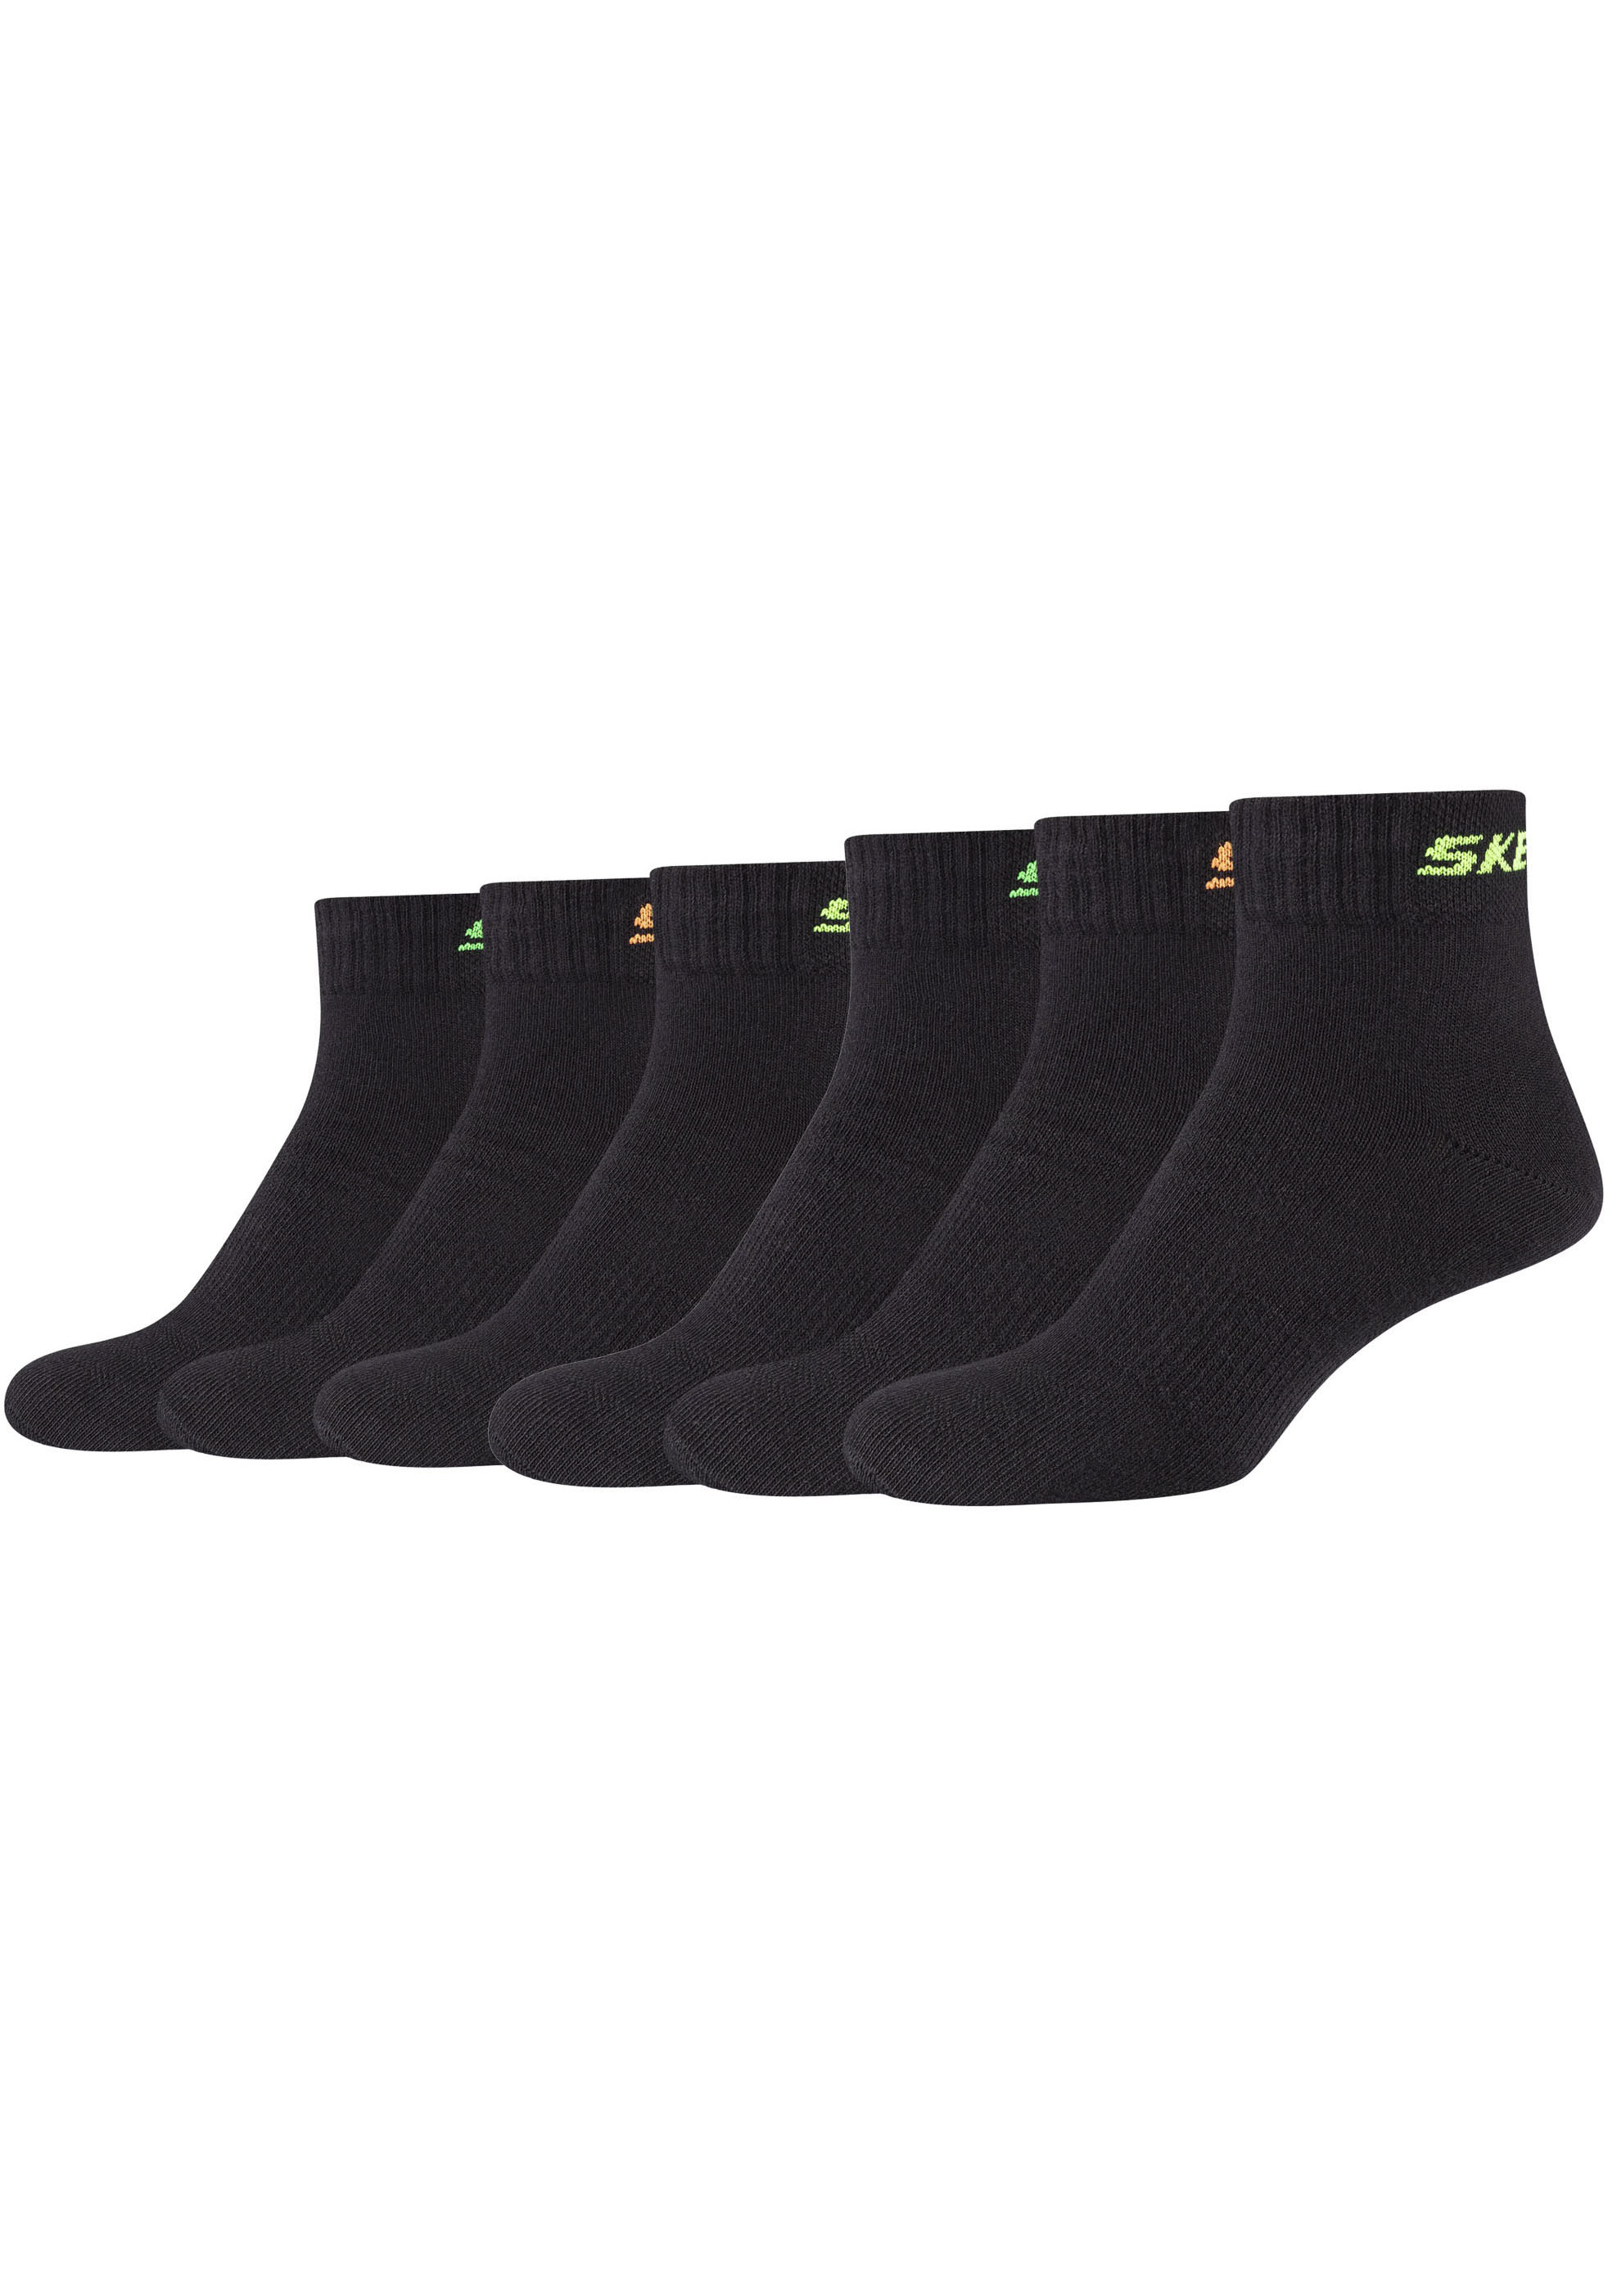 Black Socken »Socken Friday Pack« Skechers 6er BAUR |